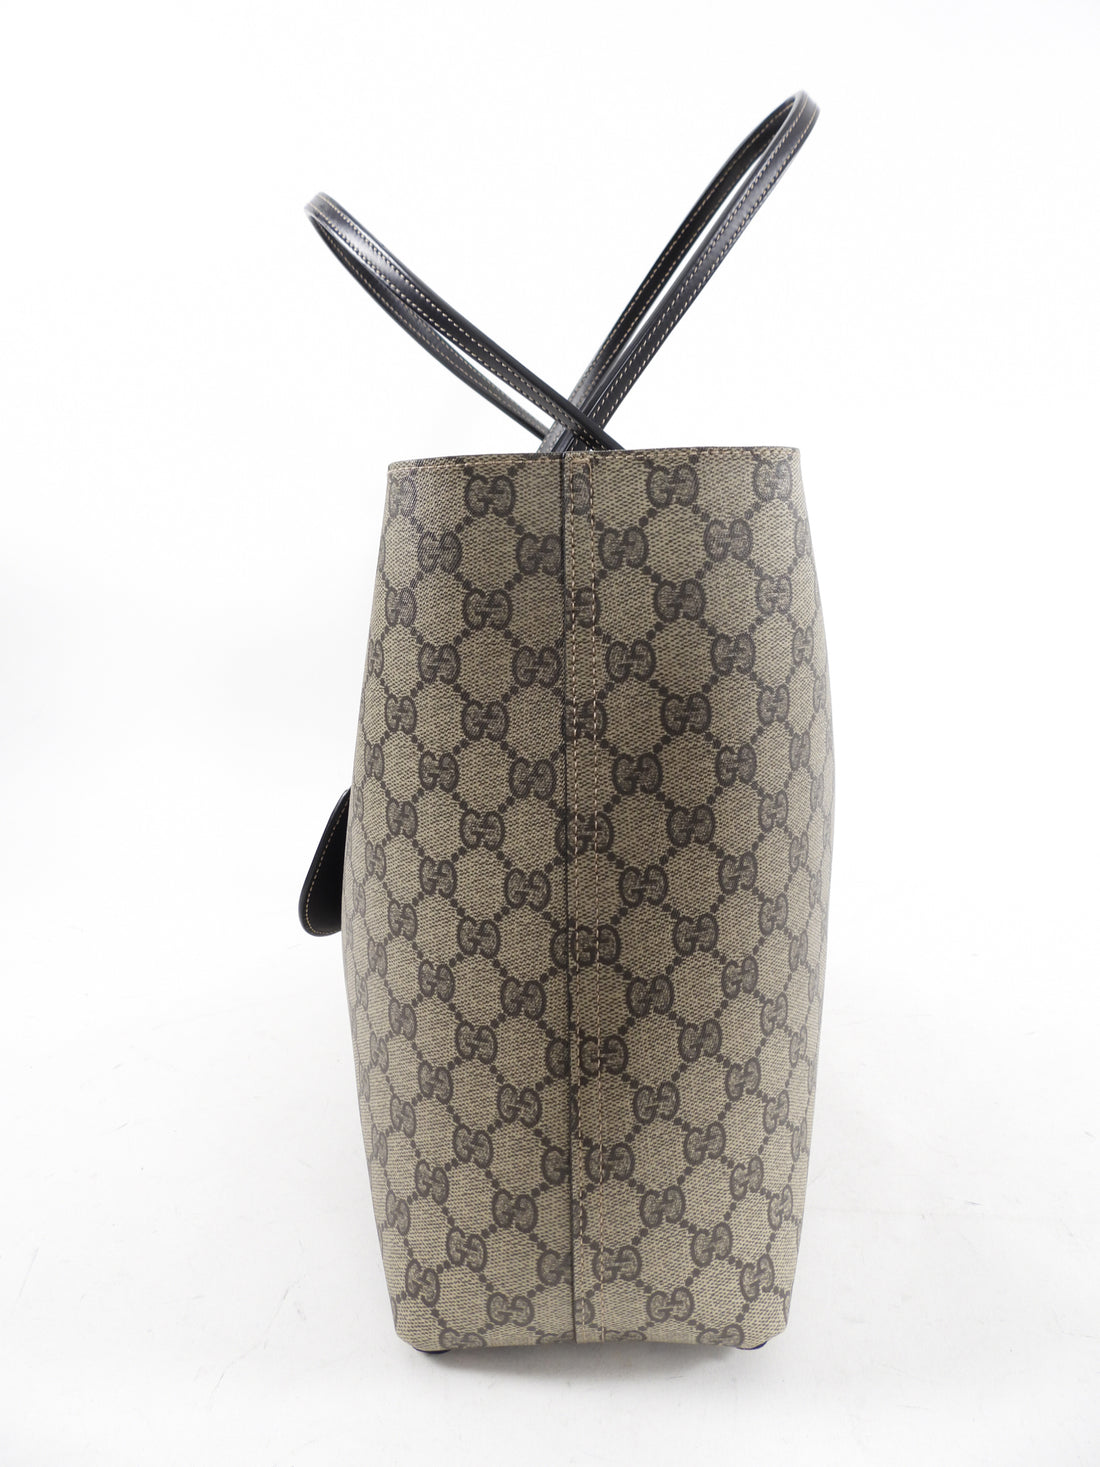 Gucci Monogram Supreme Reversible Tote Bag